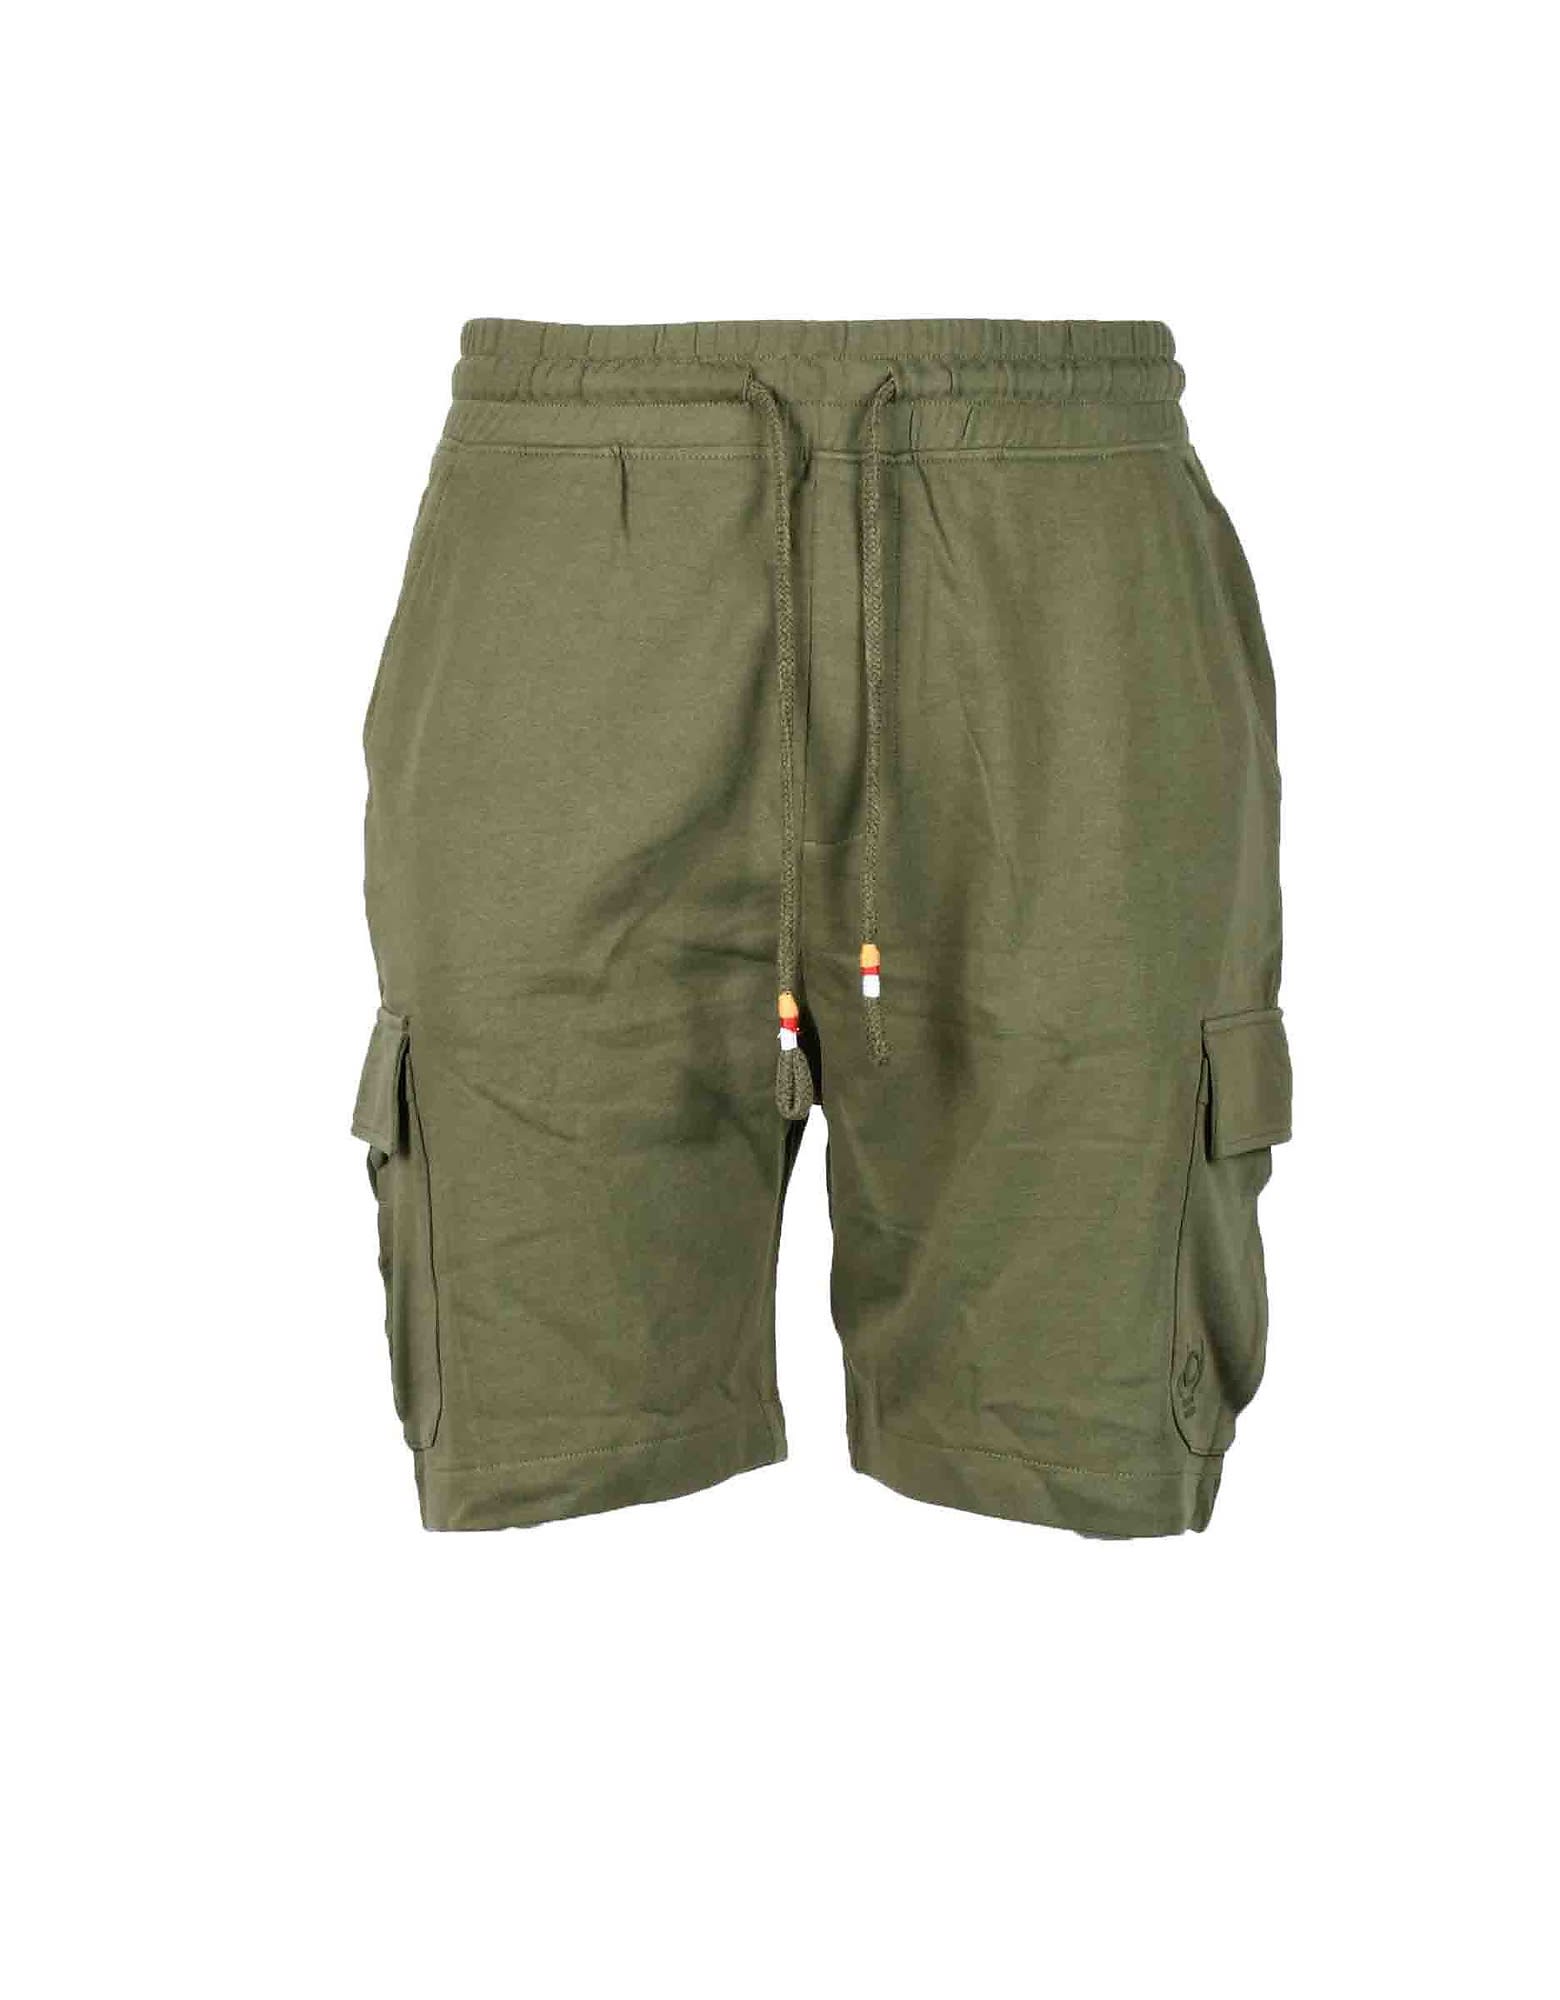 Hamaki-Ho Mens Green Bermuda Shorts